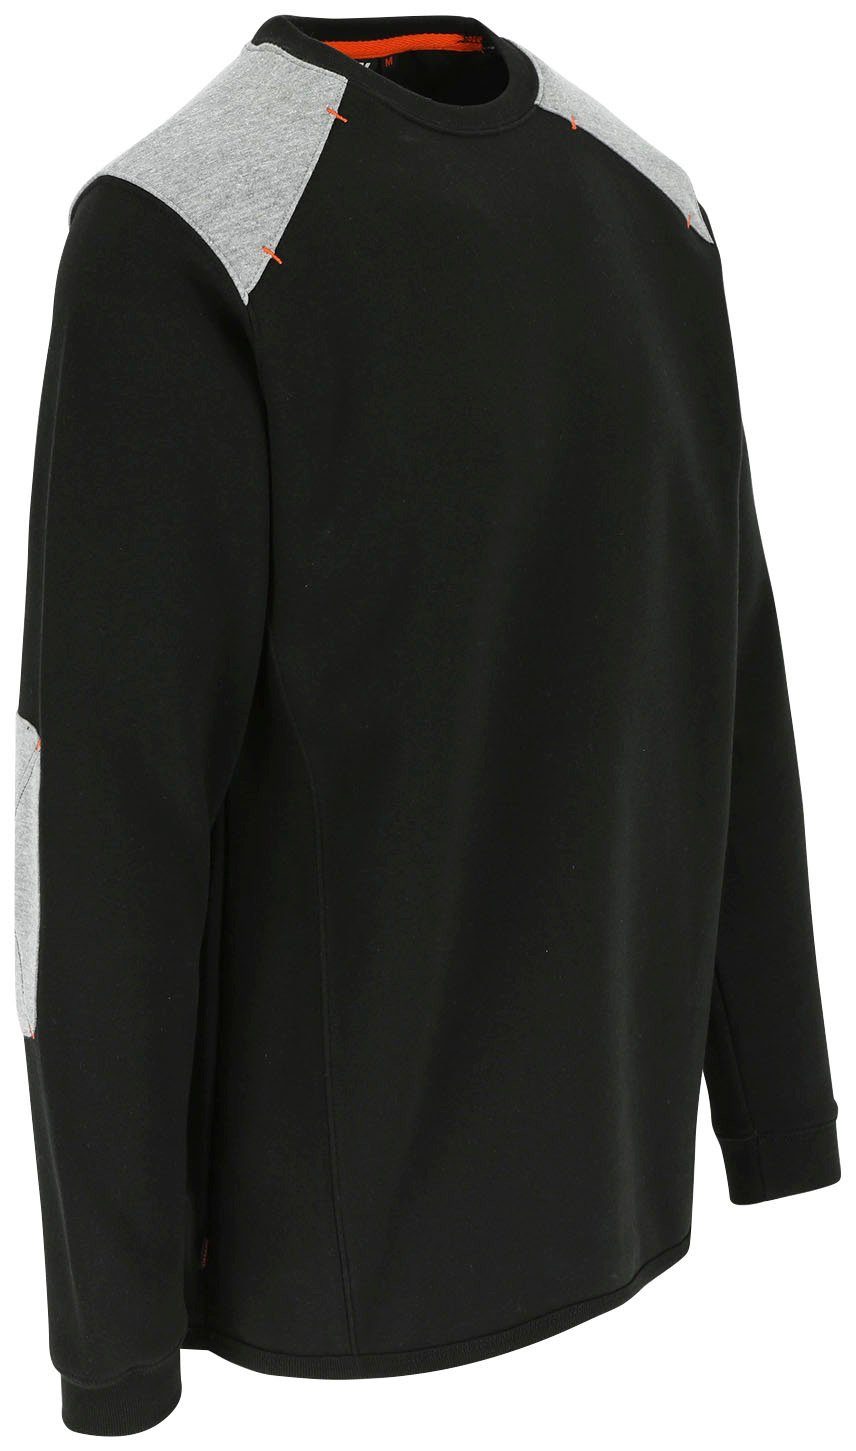 Sweater Herock Rückenteil - weiches schwarz Rundhalspullover Kragen - Langes Artemis Tragegefühl Rippstrick